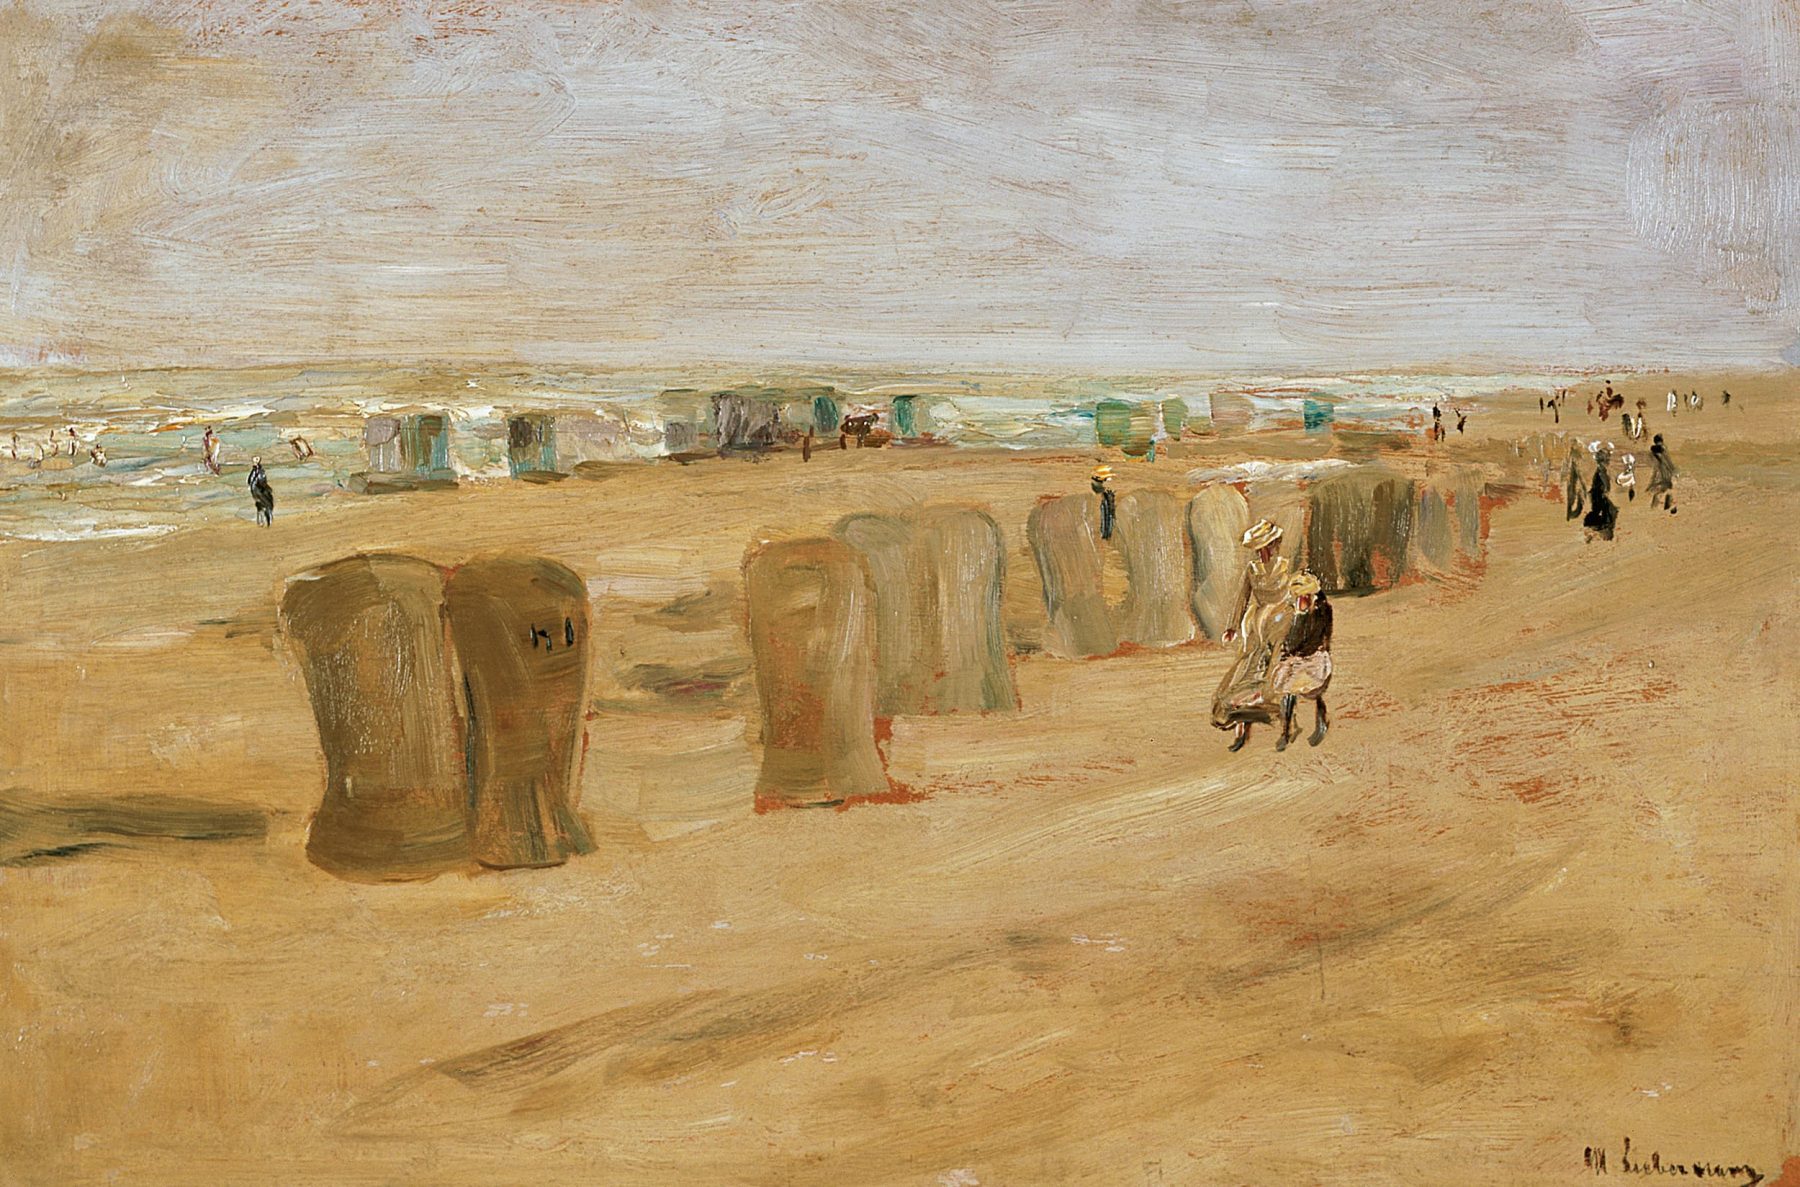 Gemälde eines Strandes mit Strandkörben und Personen